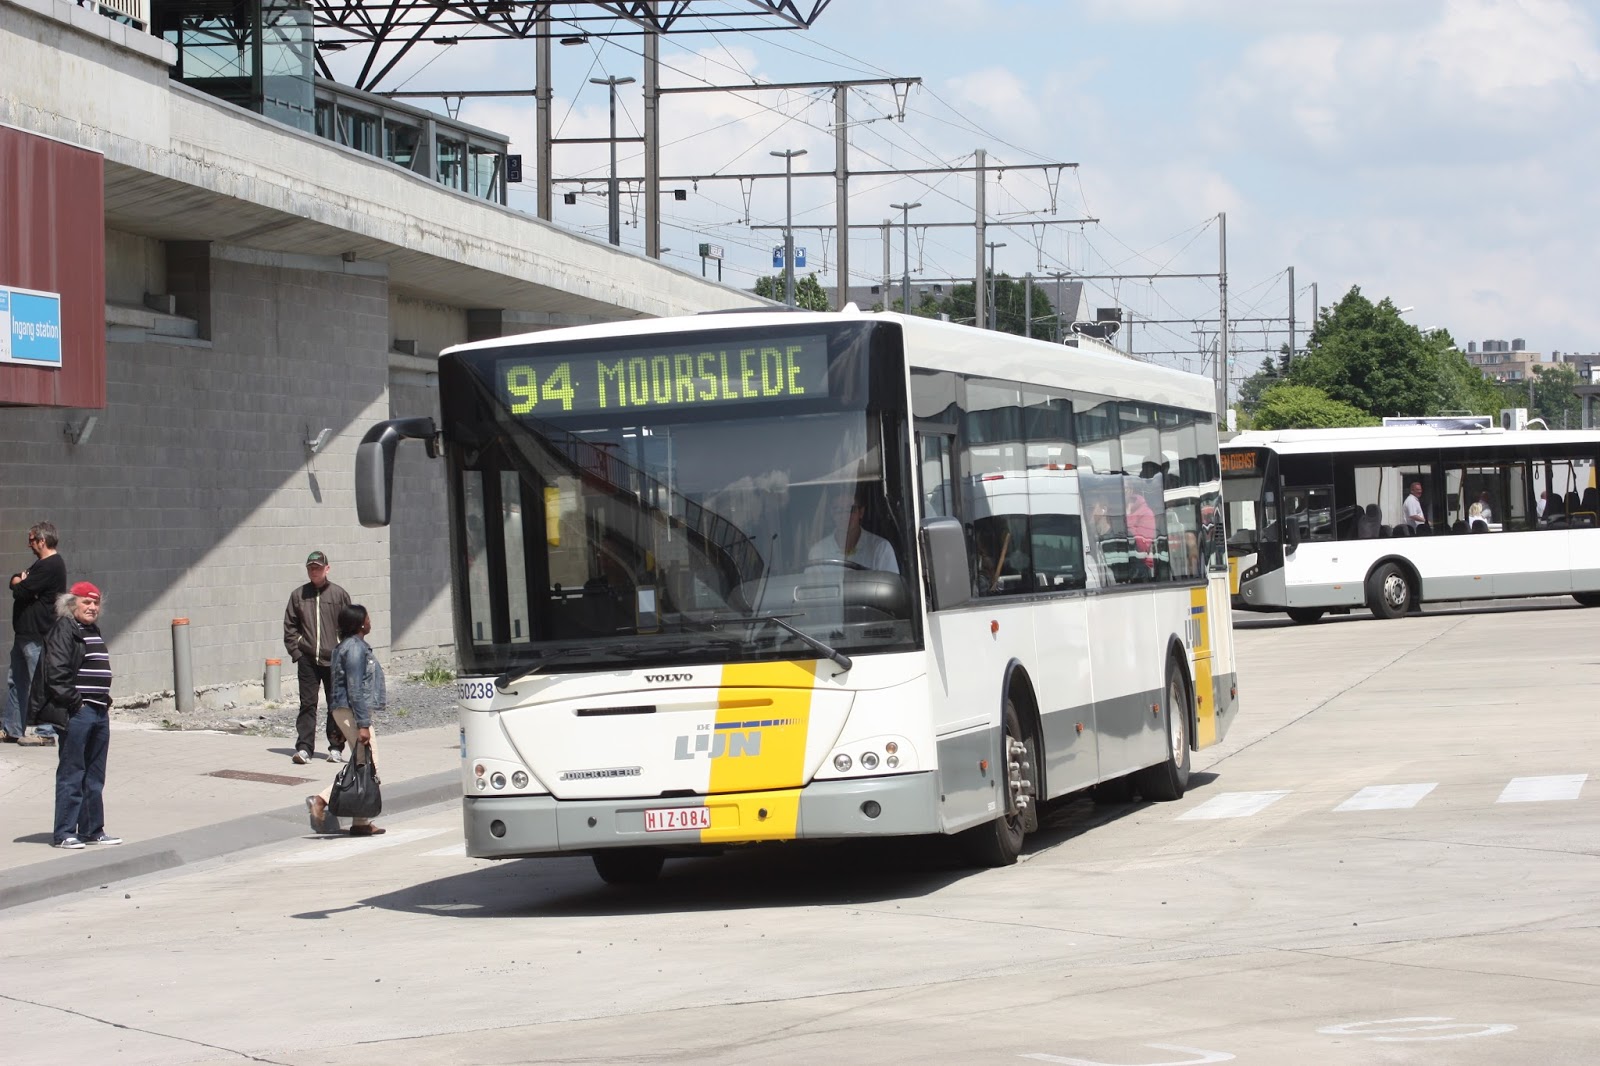 Losjes Plakken complexiteit openbaar vervoer foto's uit voornamelijk belgie zowel bus trein tram:  augustus 2016